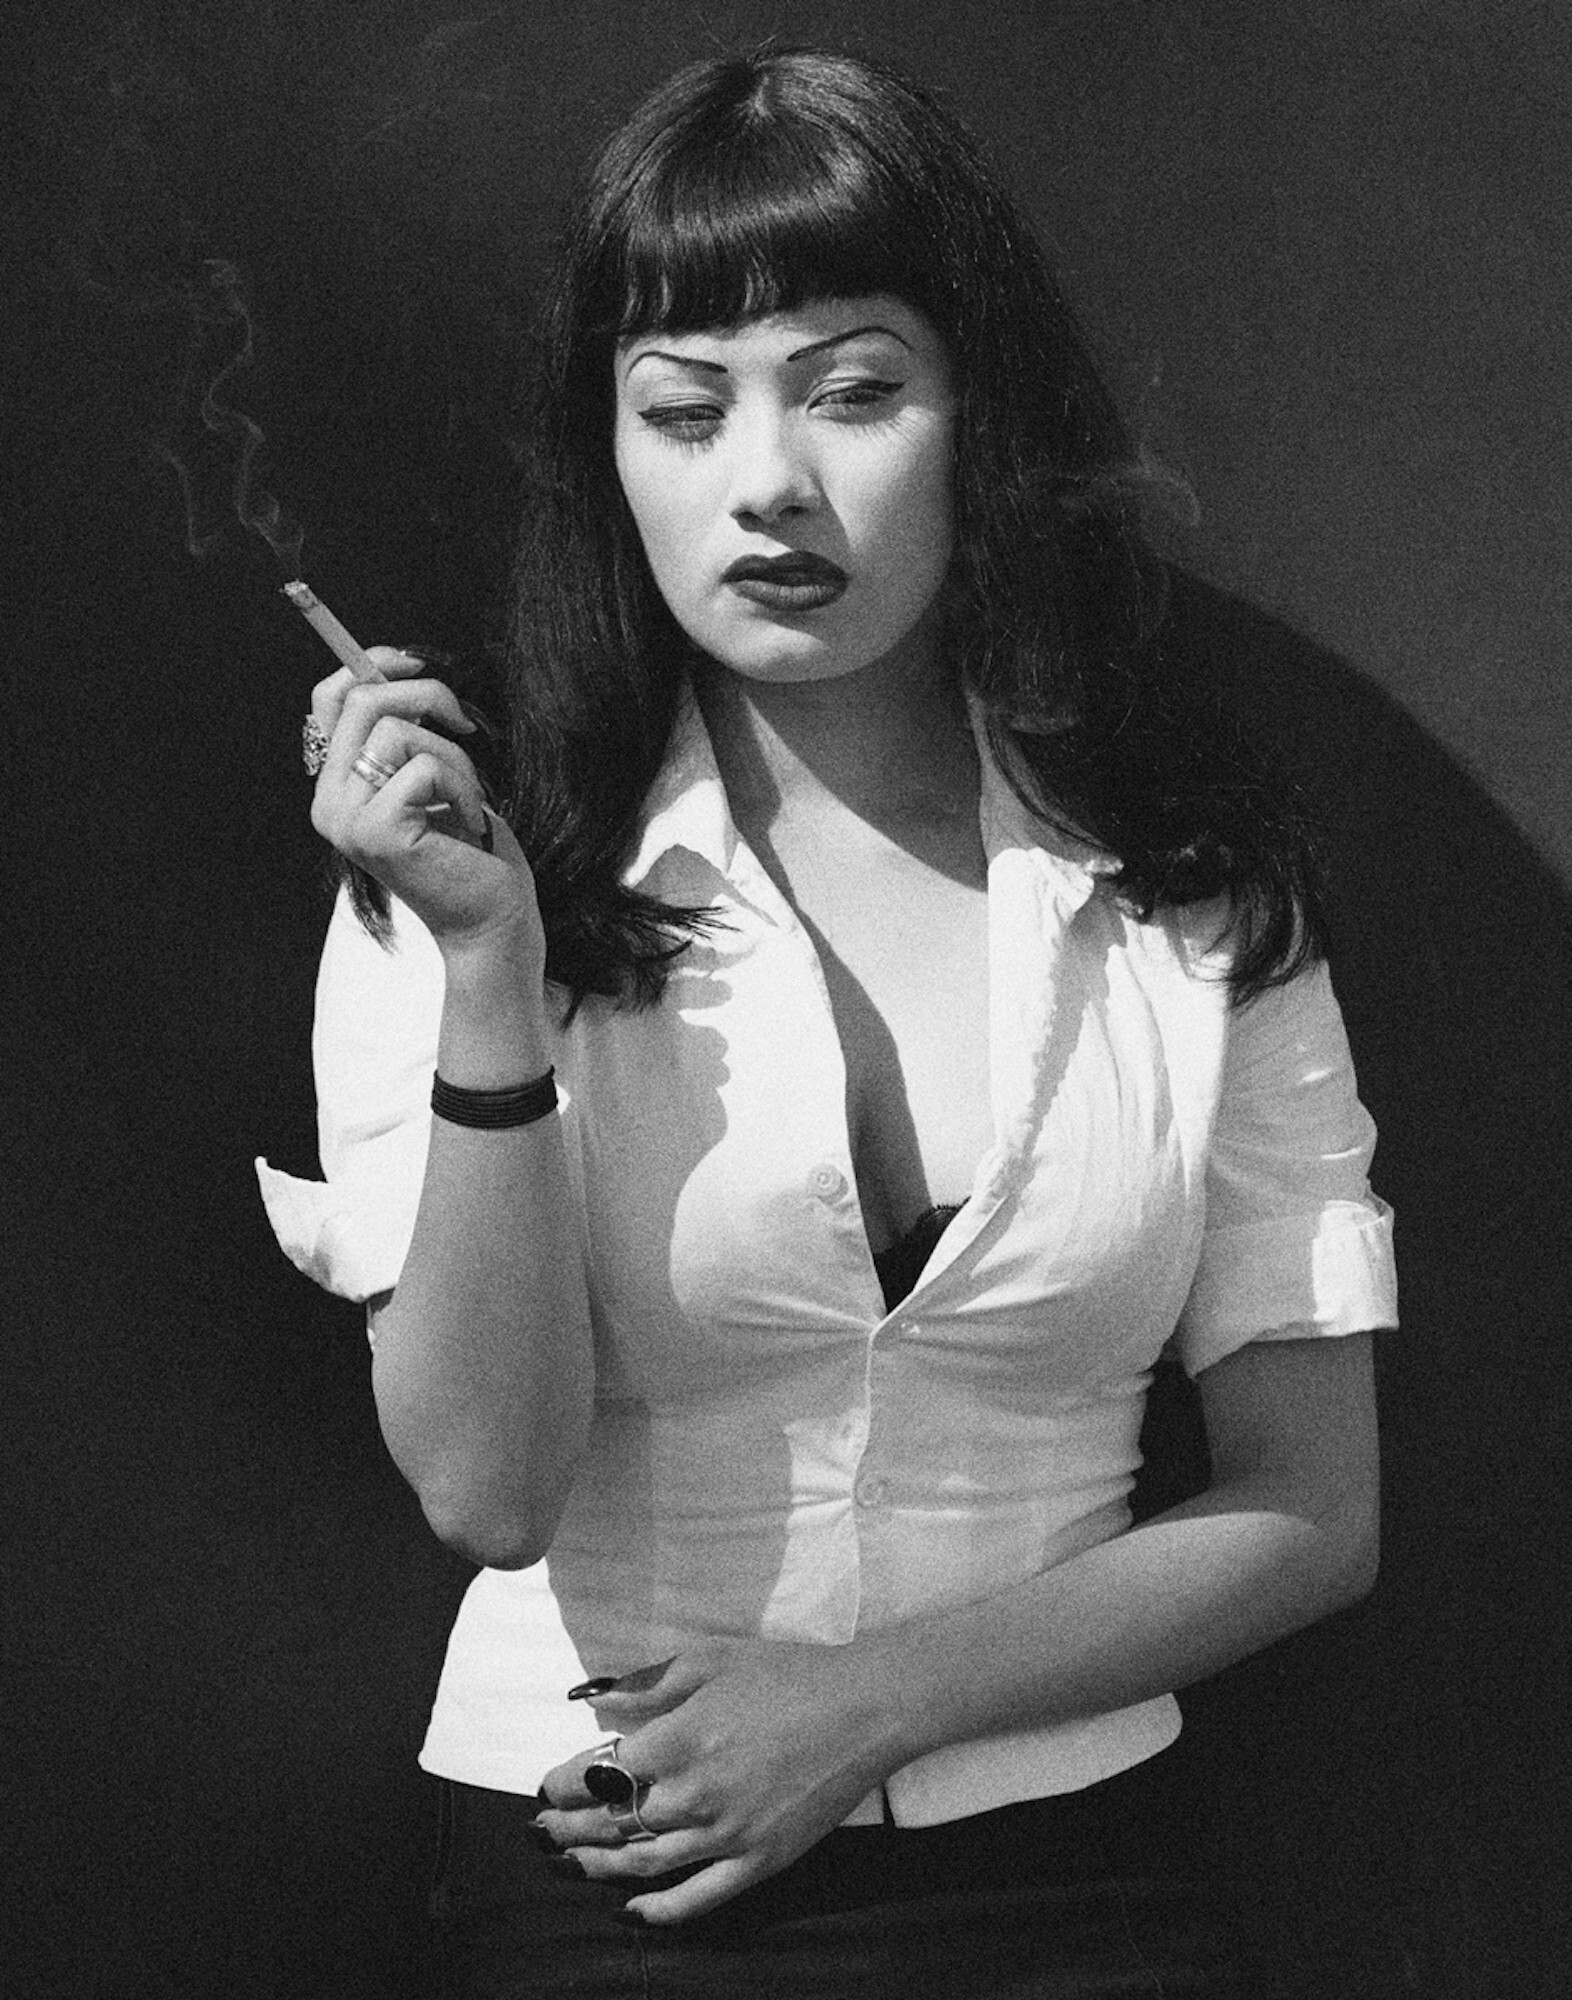 Breaunna Smoking, Алжир, Лас-Вегас, 2000 год. Фотограф Альберт Уотсон